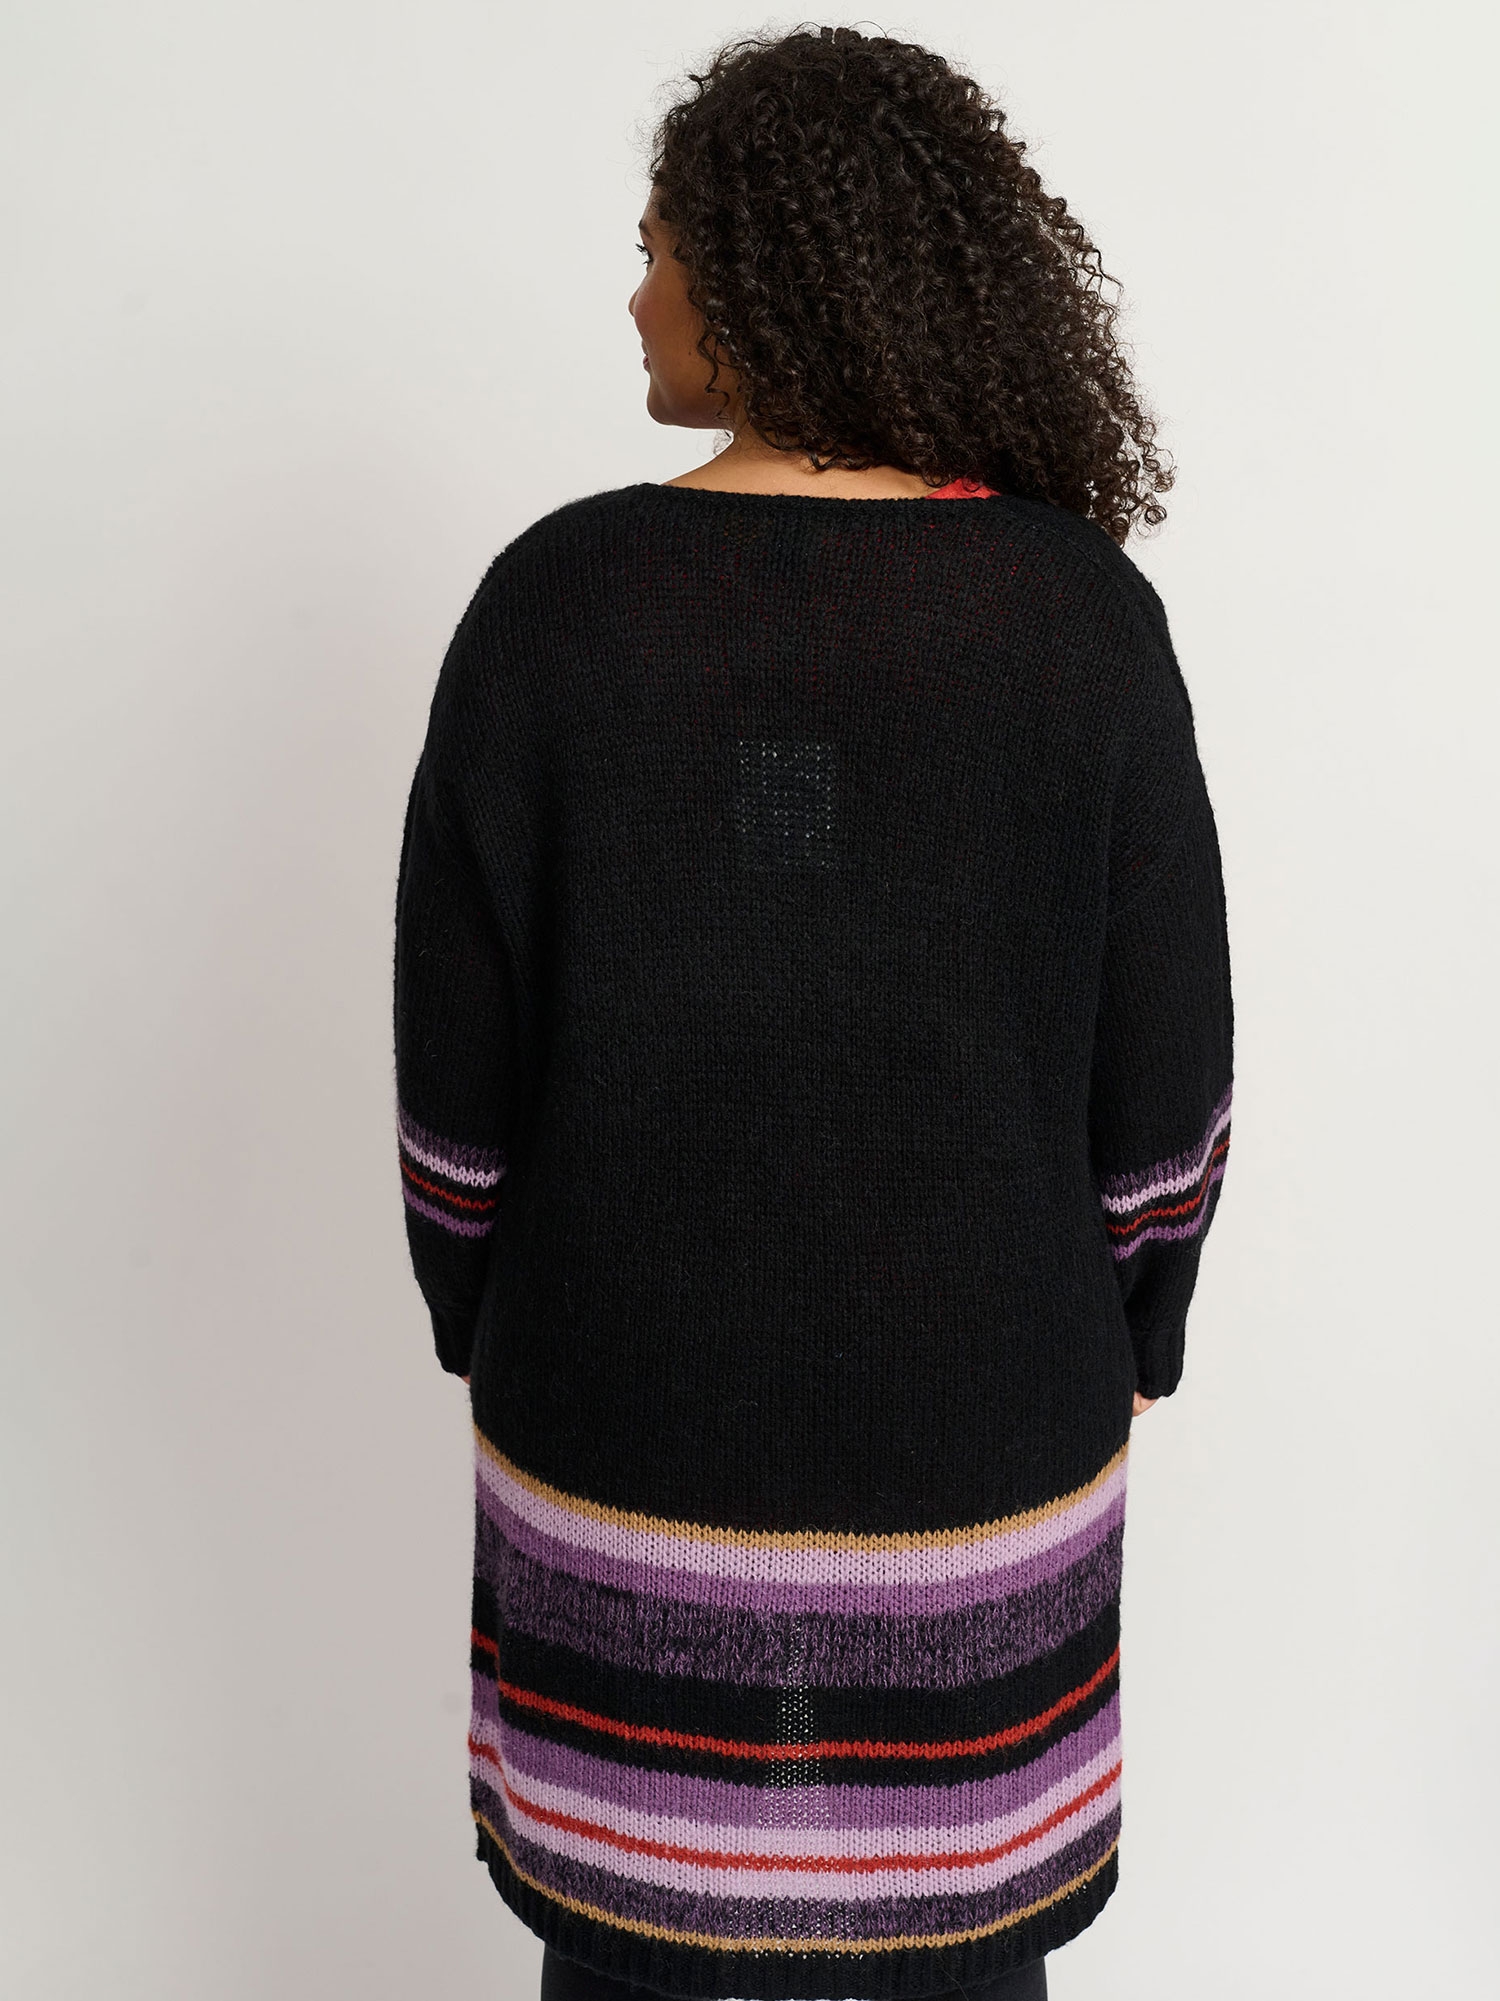 MATIE - Lang svart strikket cardigan med røde og lilla striper fra Adia